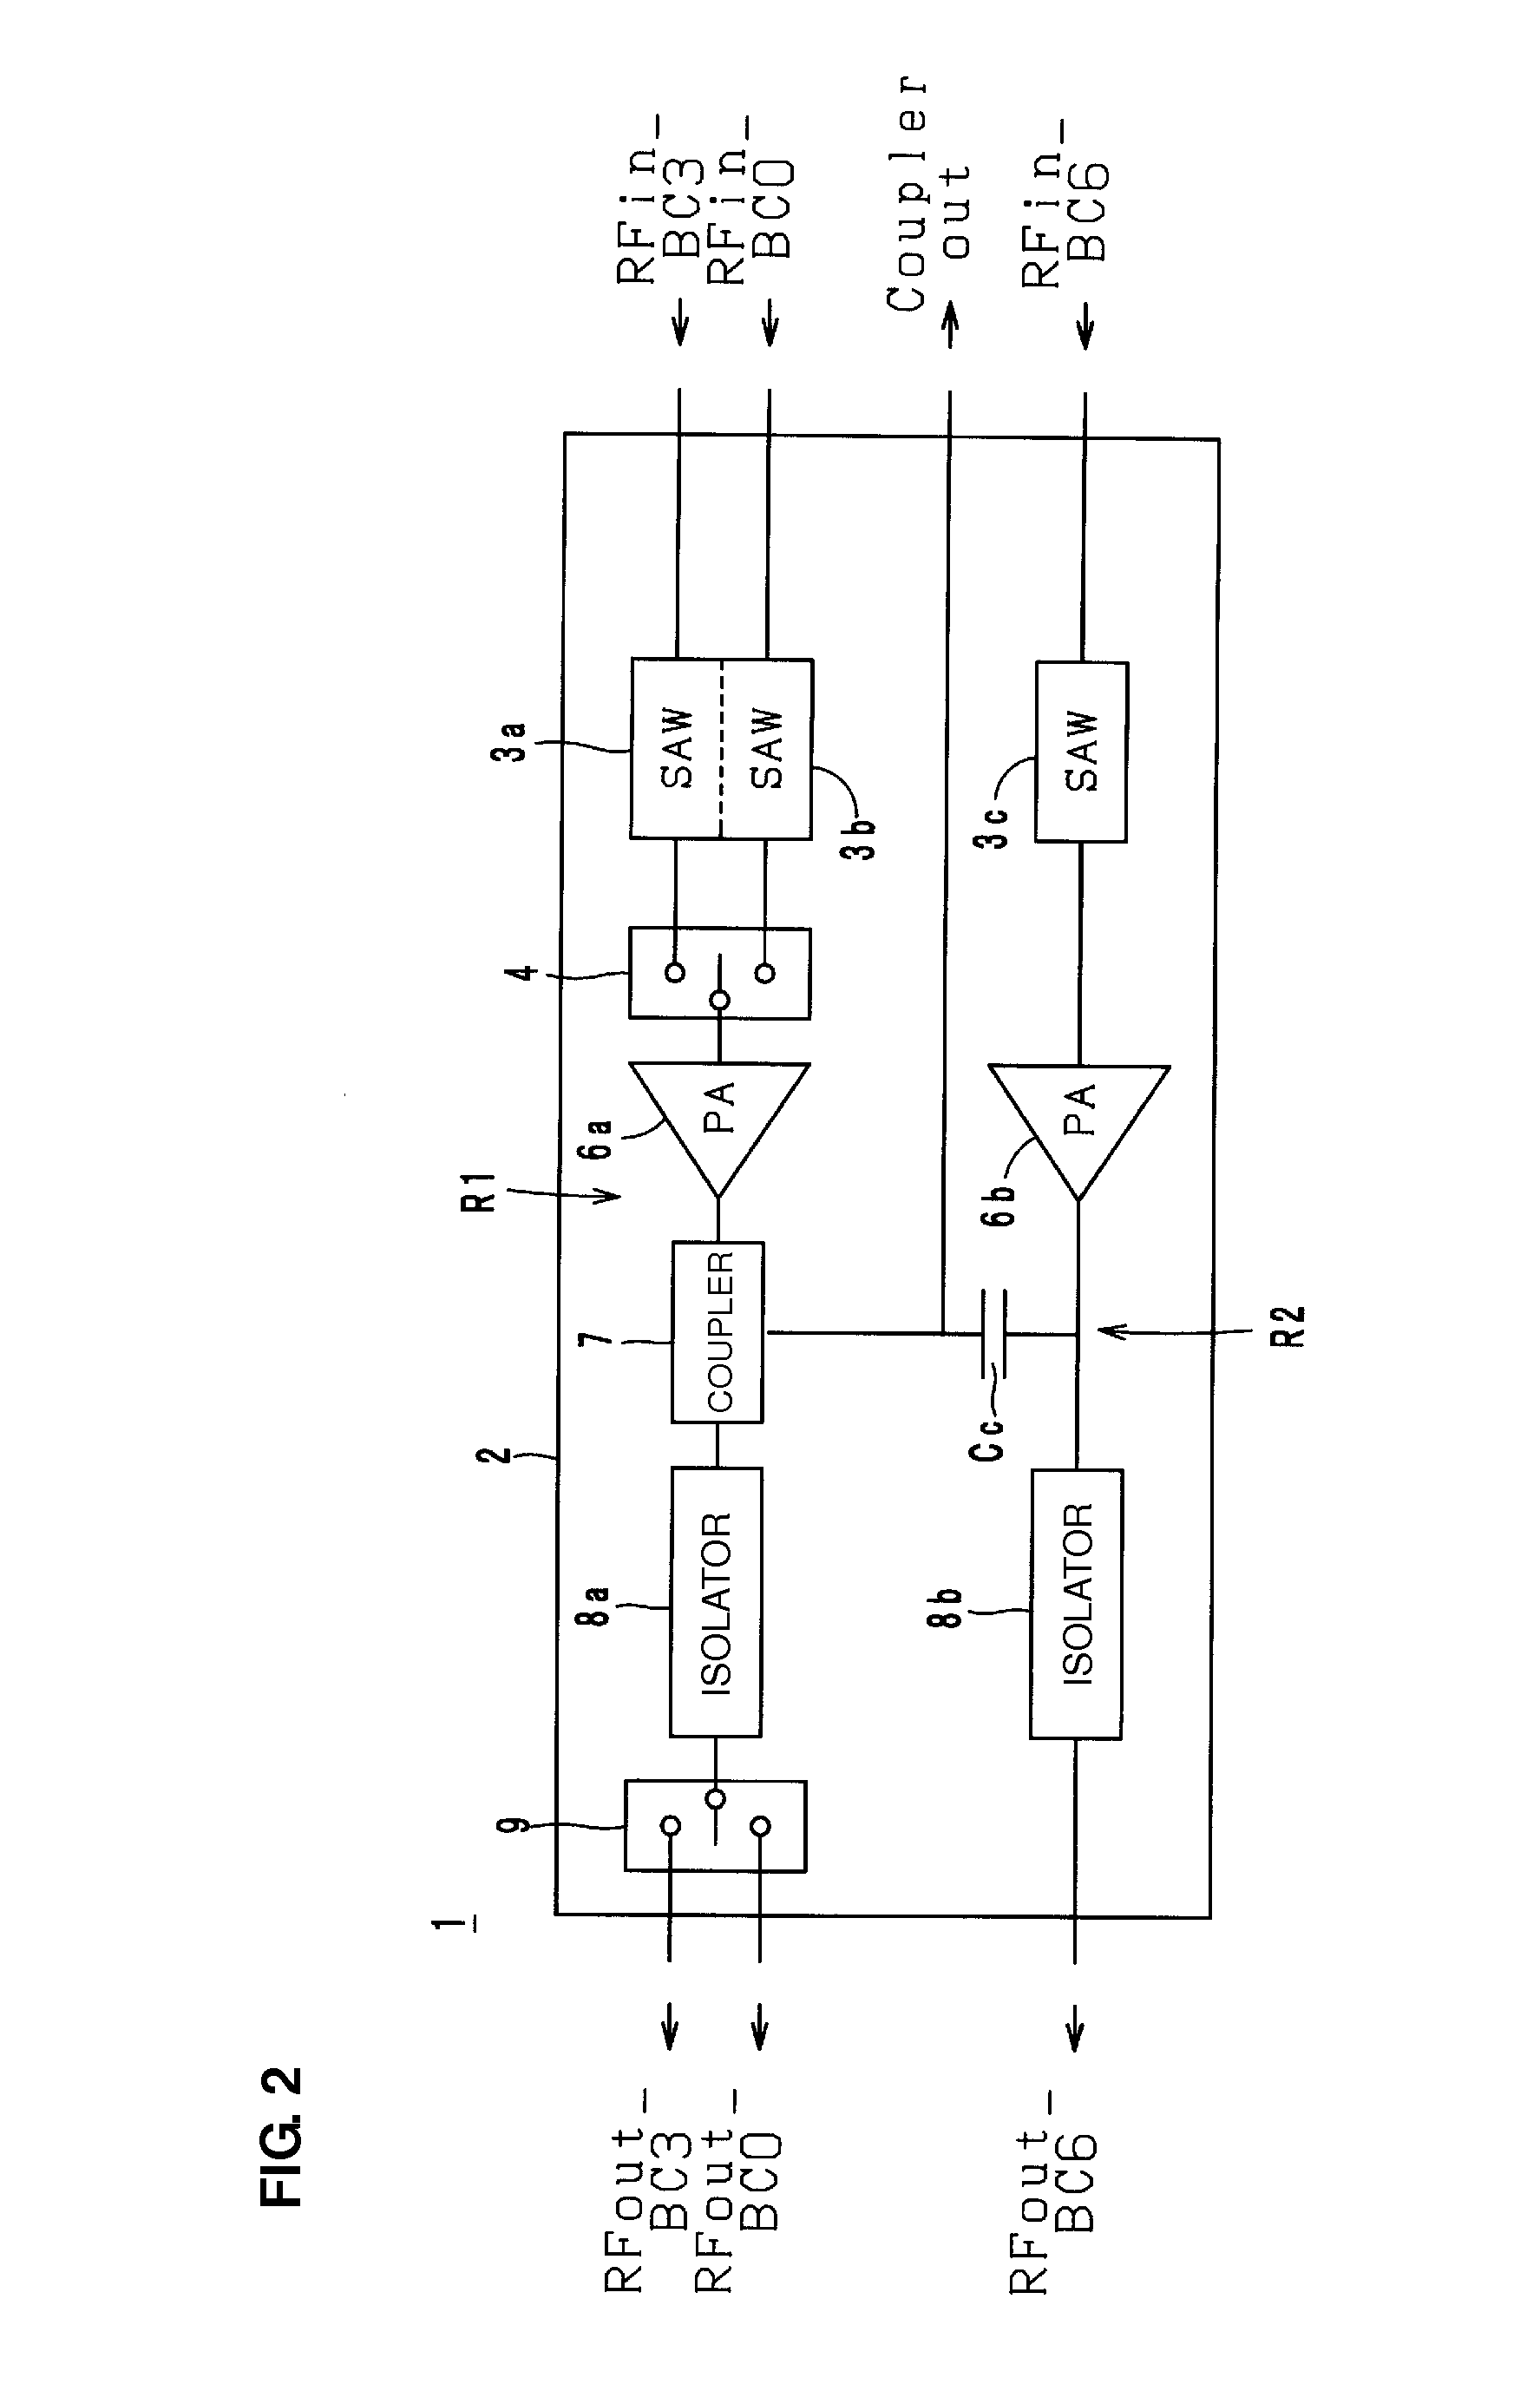 Circuit module